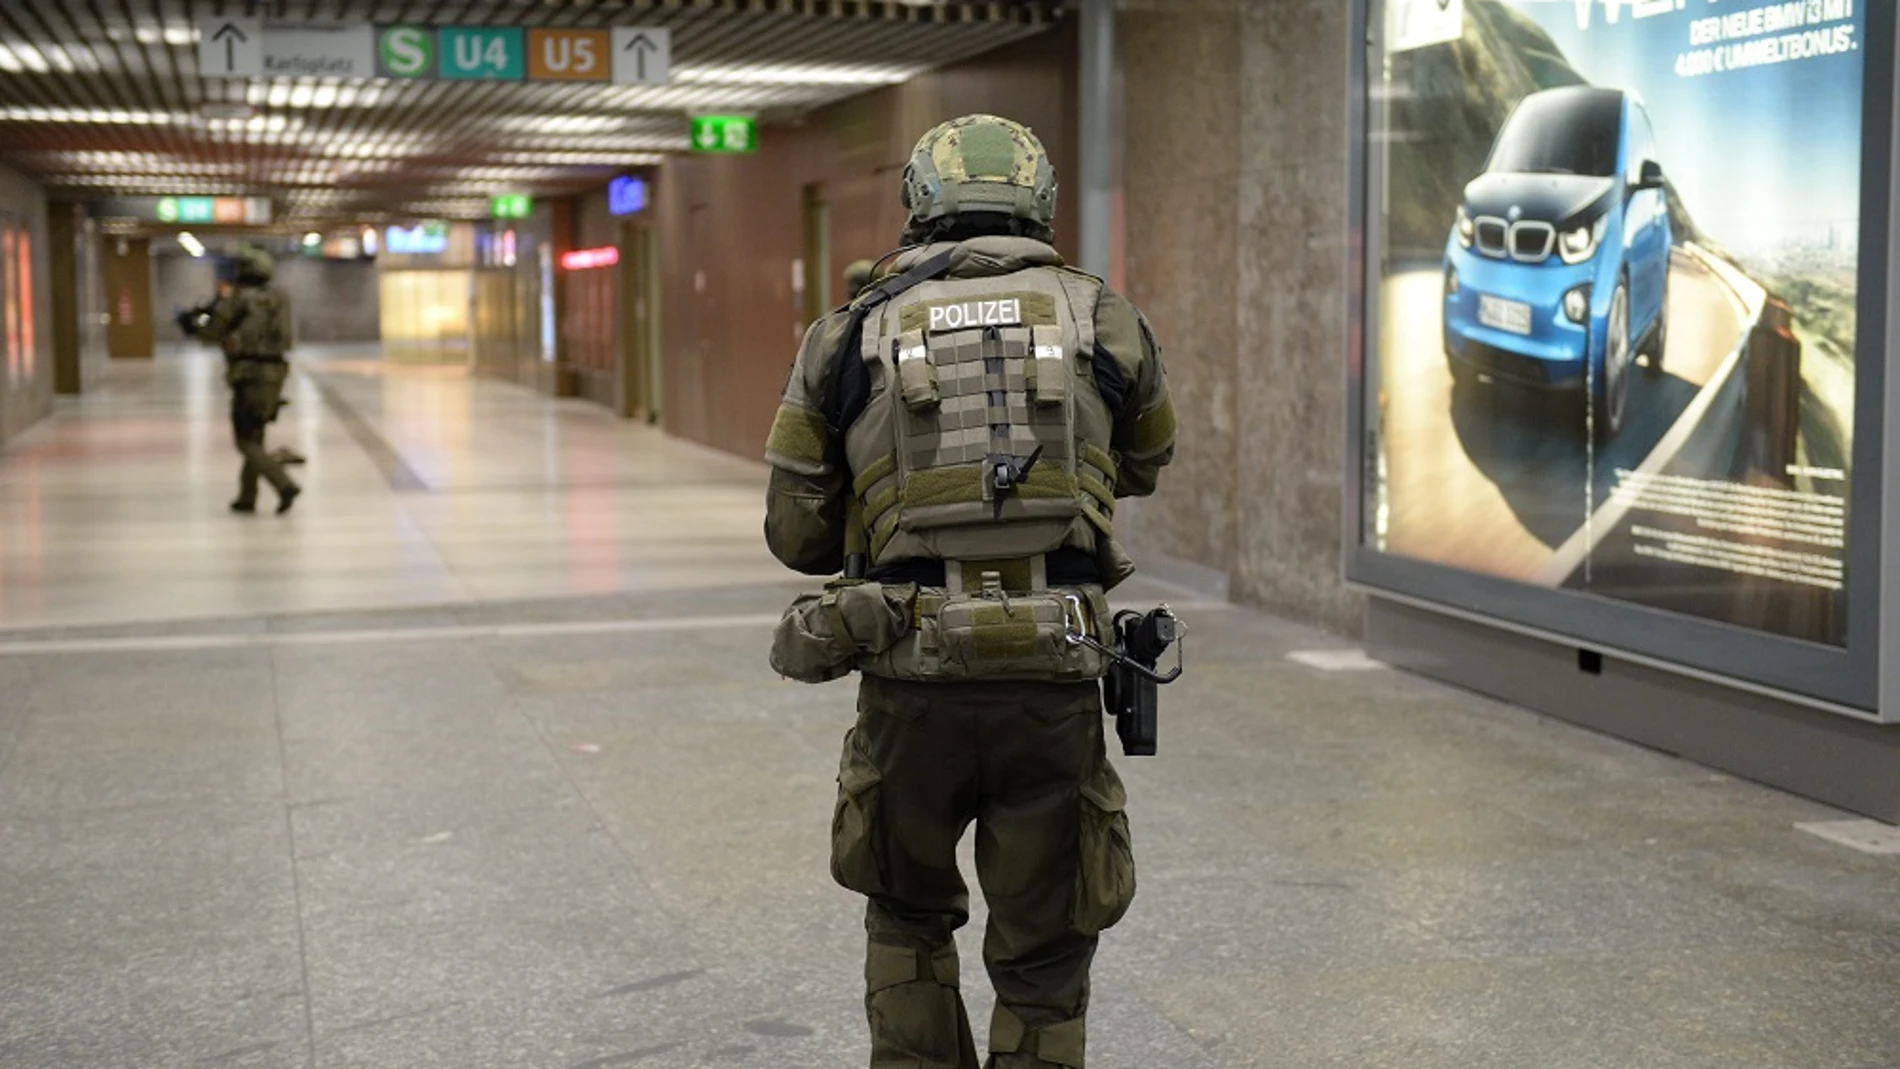 Policías de las fuerzas especiales aseguran la estación de metro de Karlsplatz (Stachus) tras el tiroteo registrado en un centro comercial en Múnich, Alemania